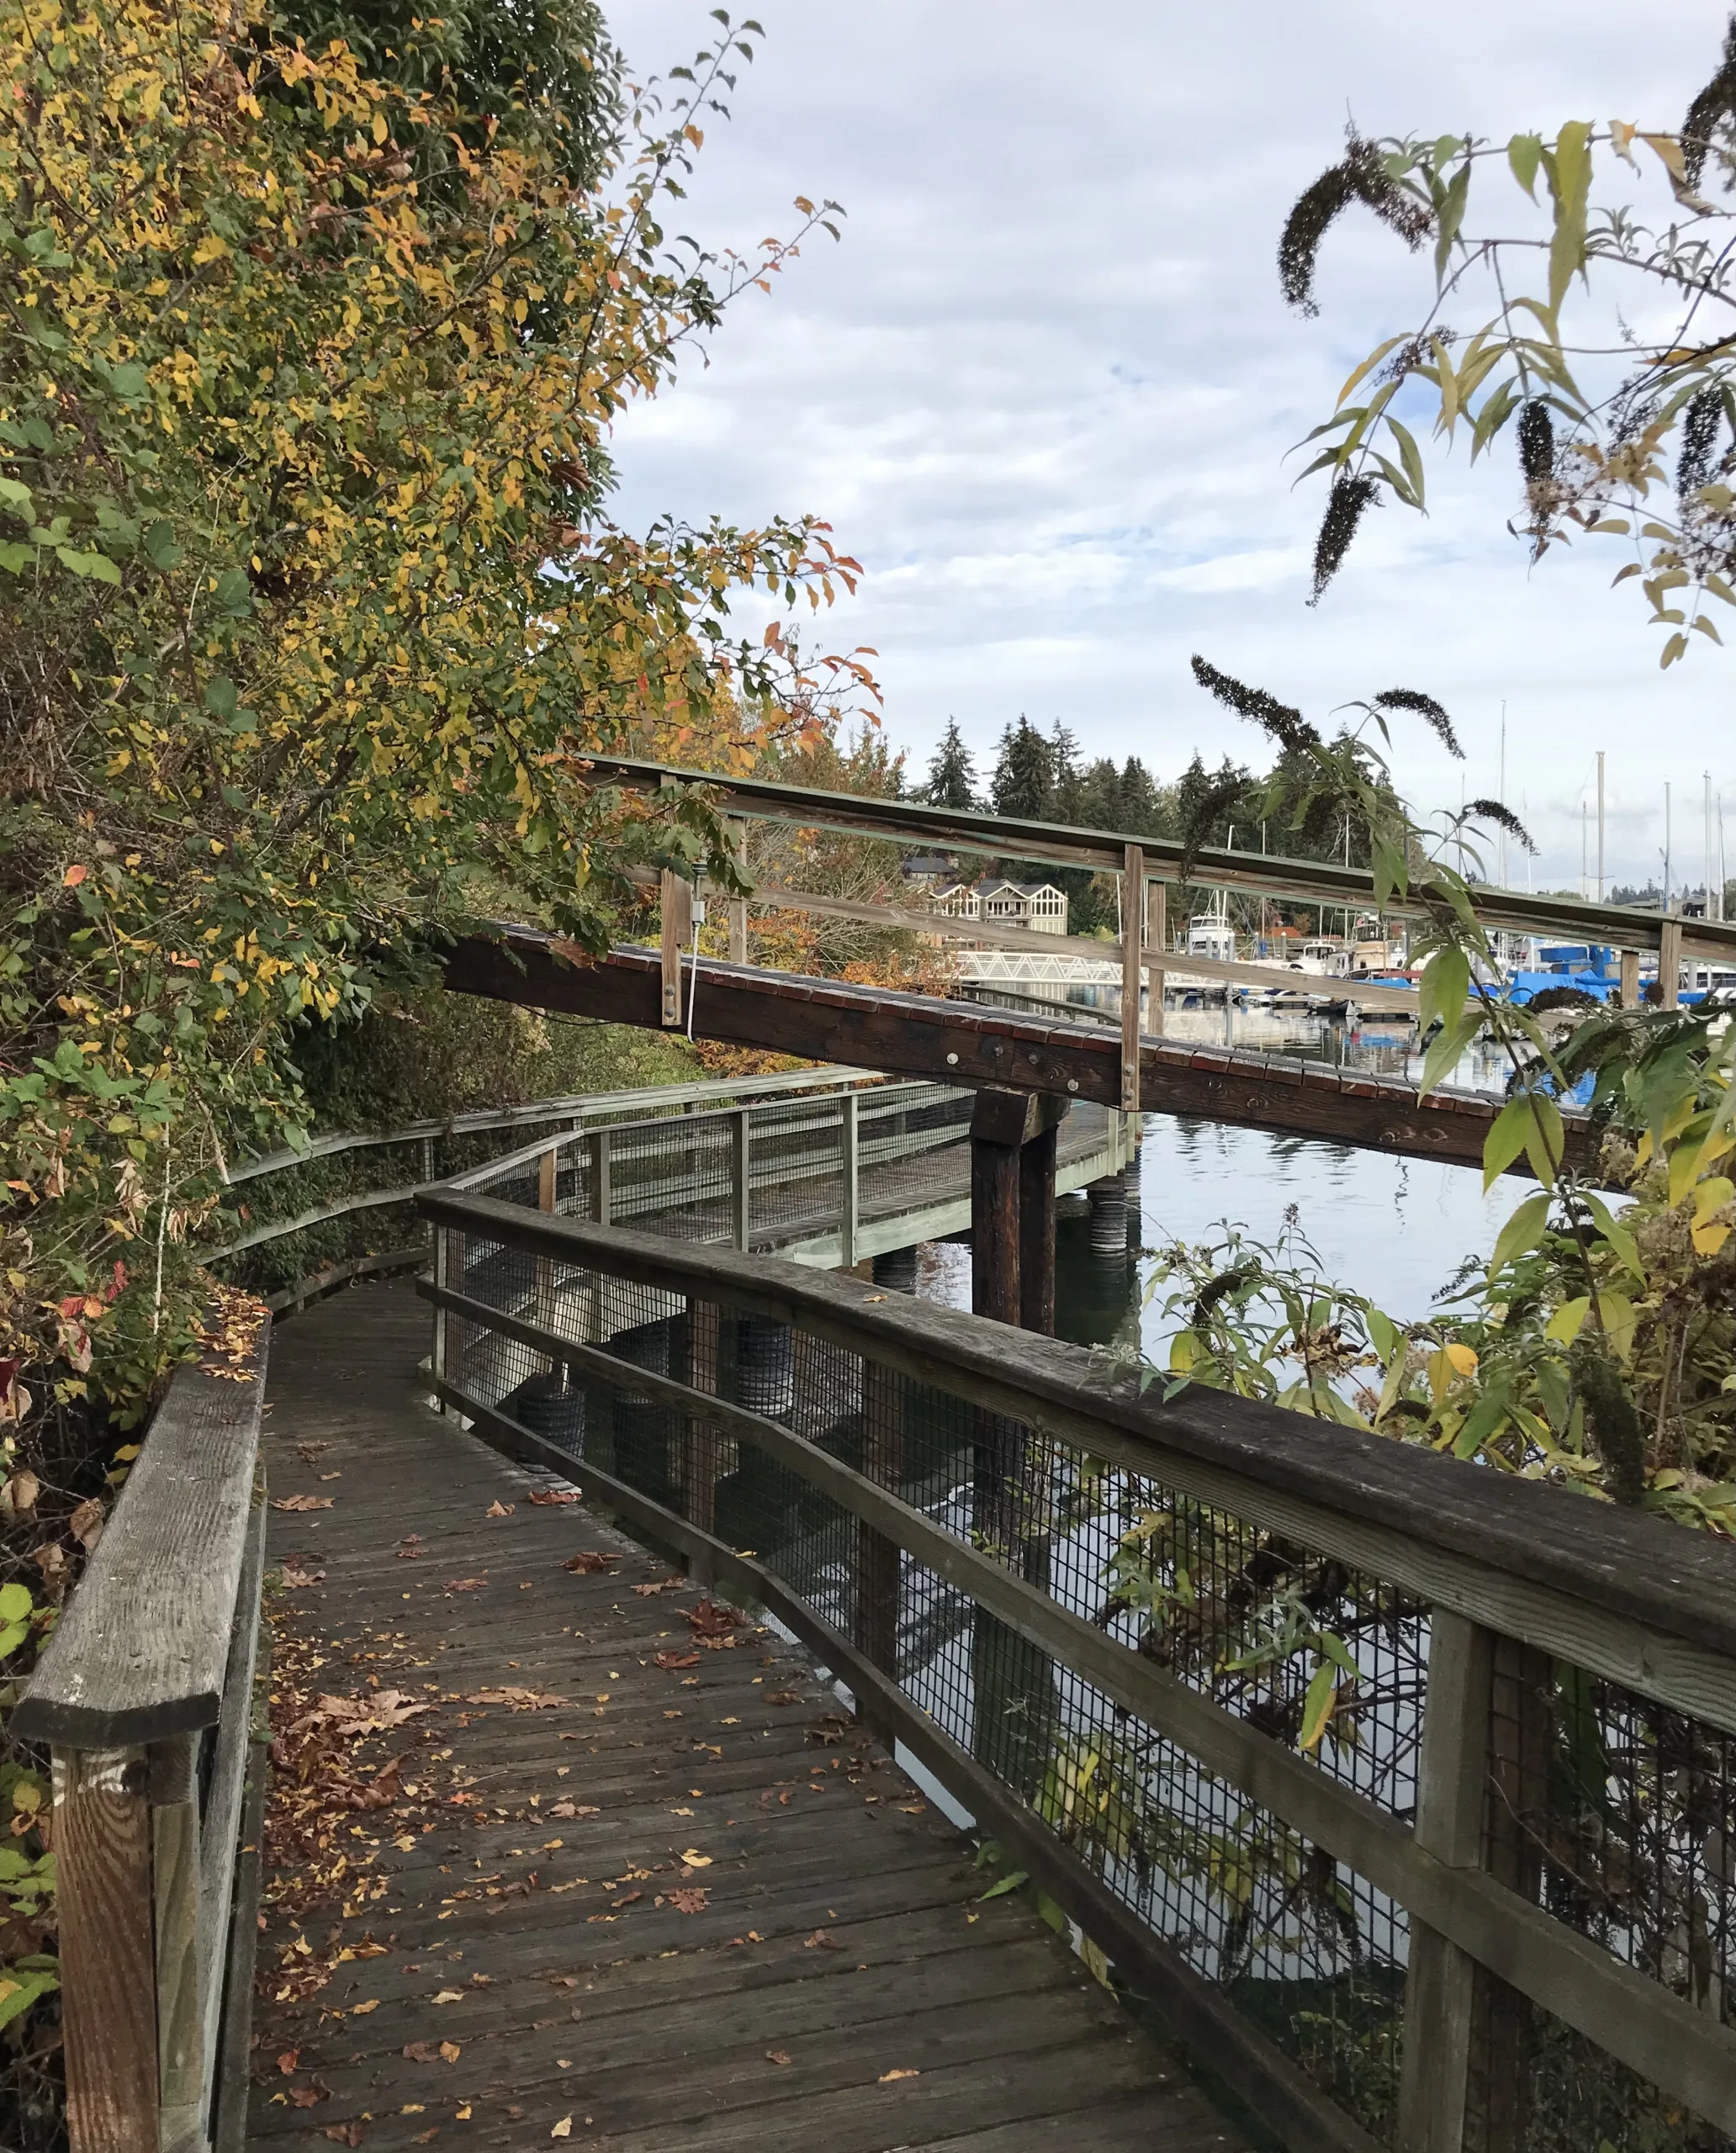 The Waterfront trail boardwalk